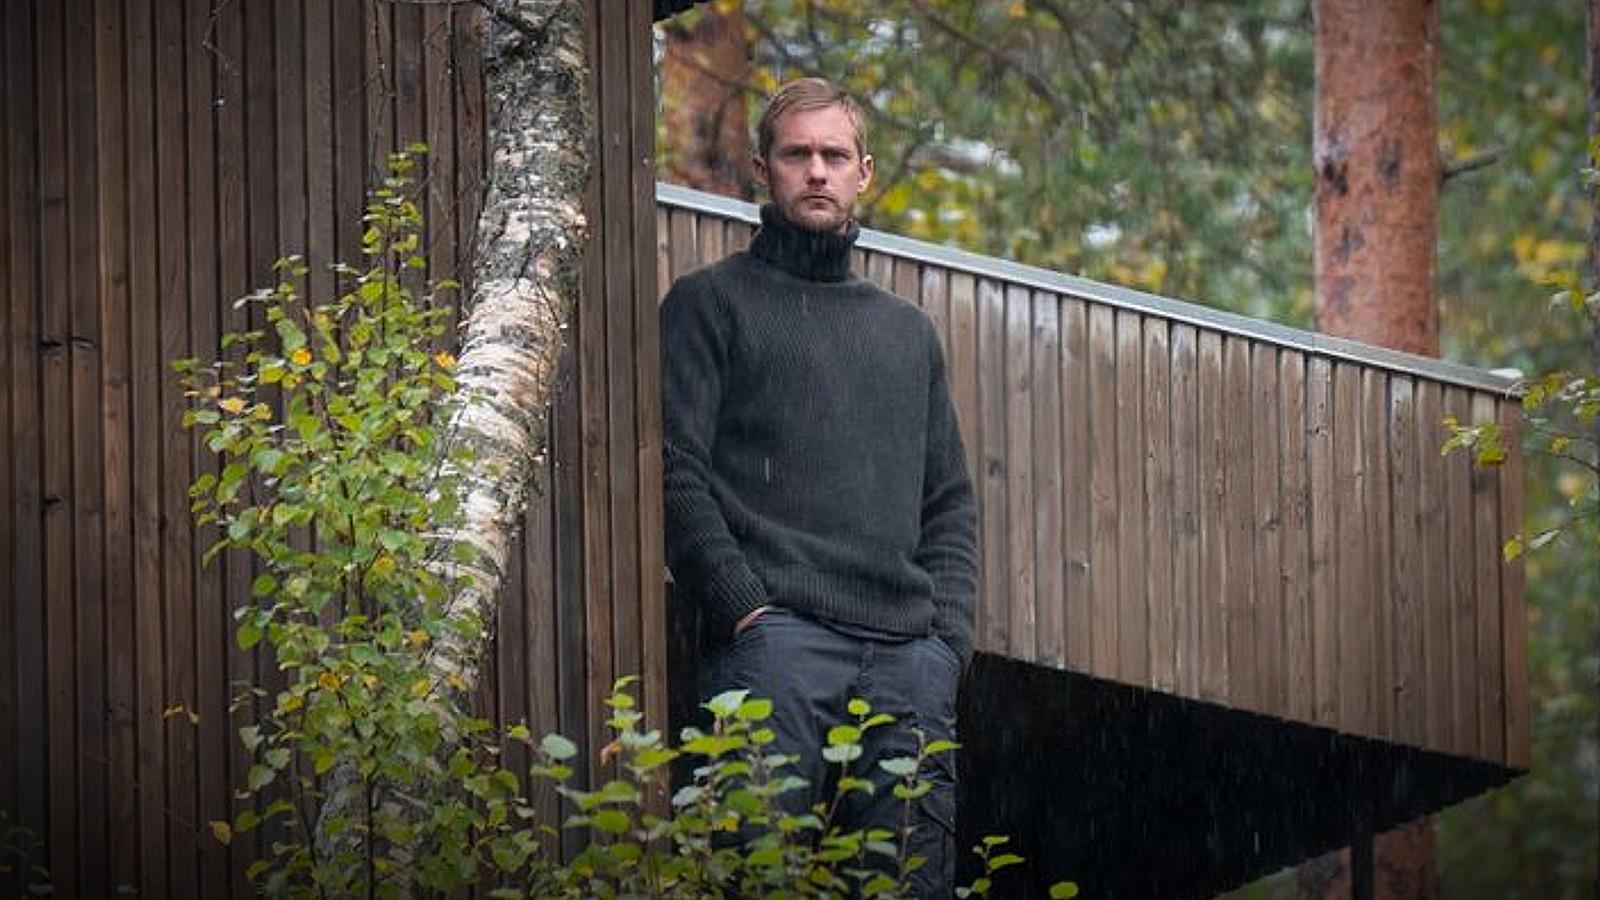 Alexander Skarsgård at the Juvet Landscape Hotel in Norway in Succession